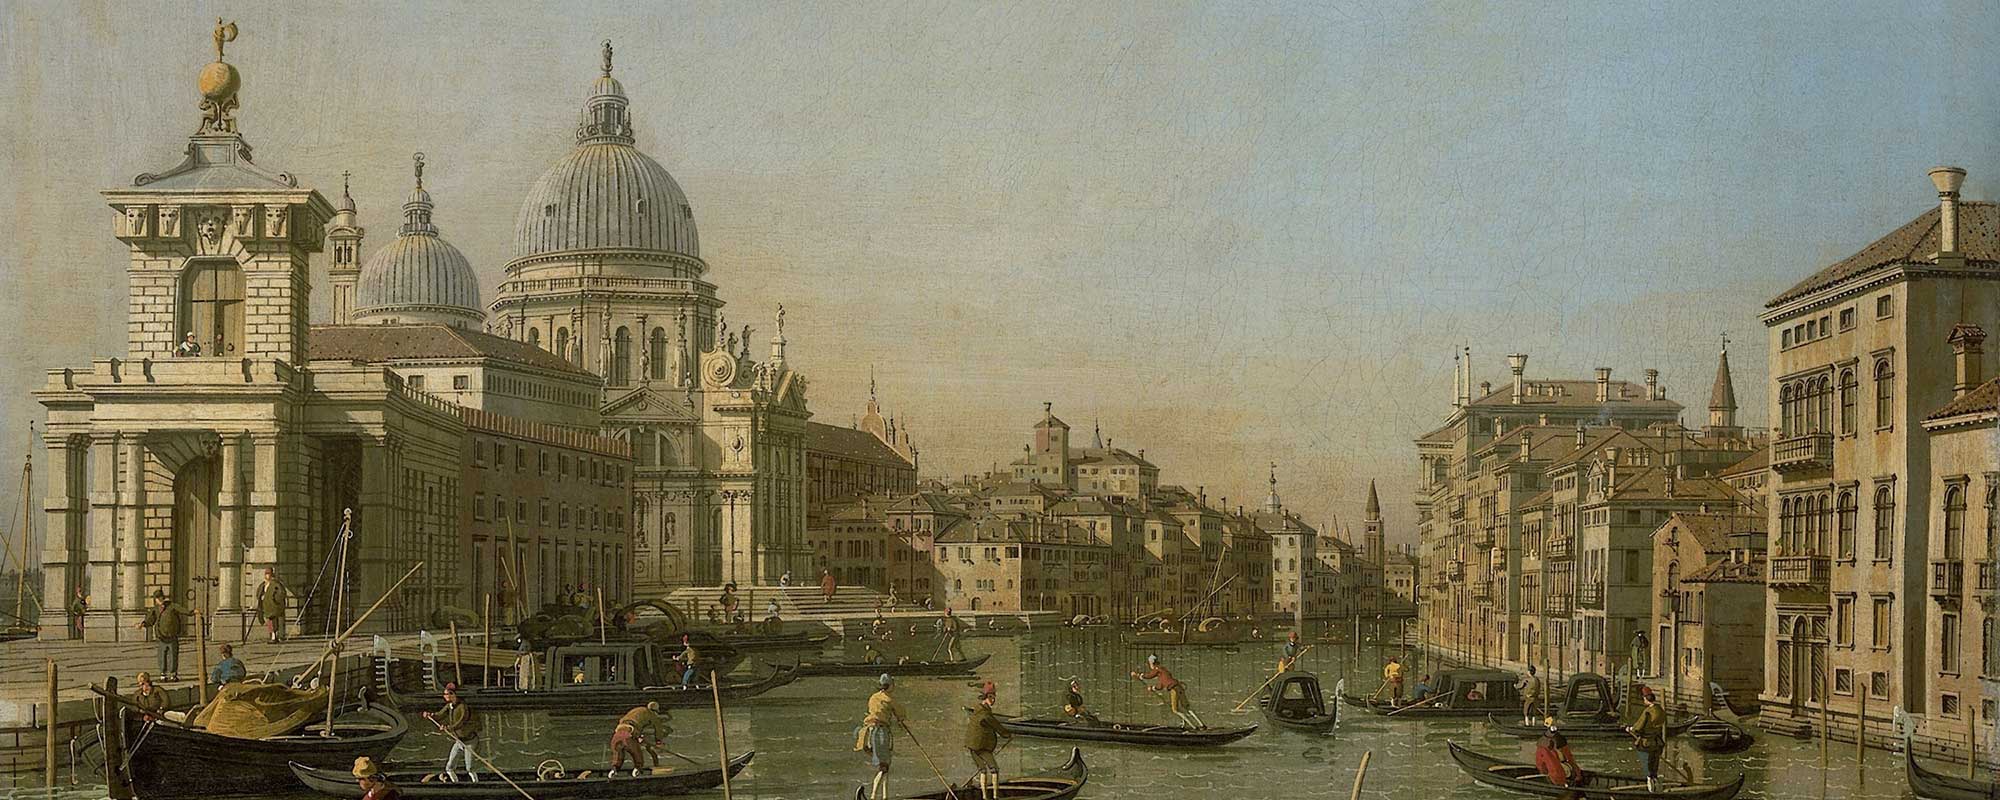 A portrait of Venice